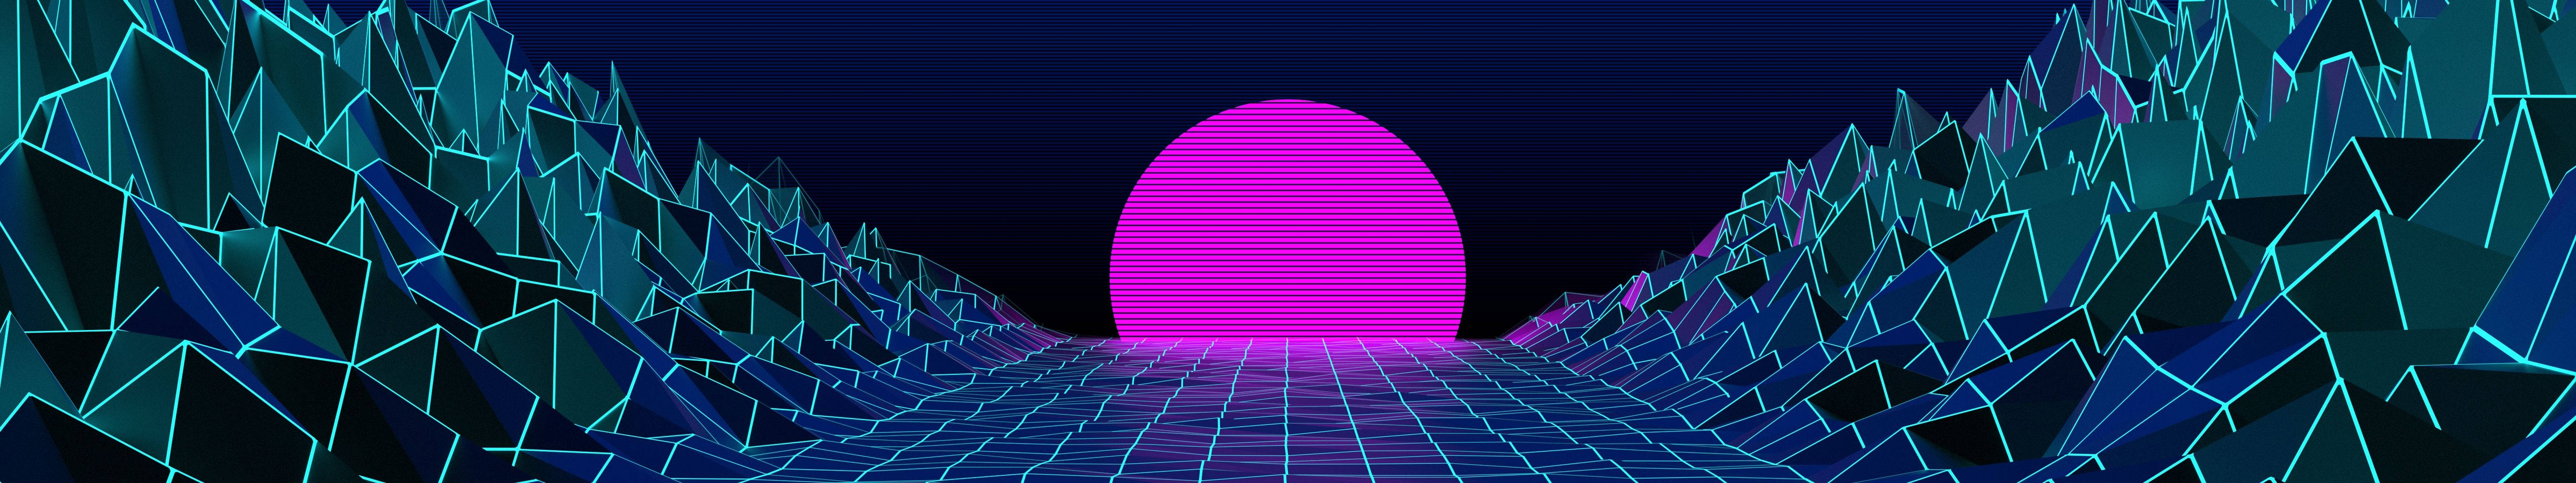 Vaporwave Pink Sun Valley Background